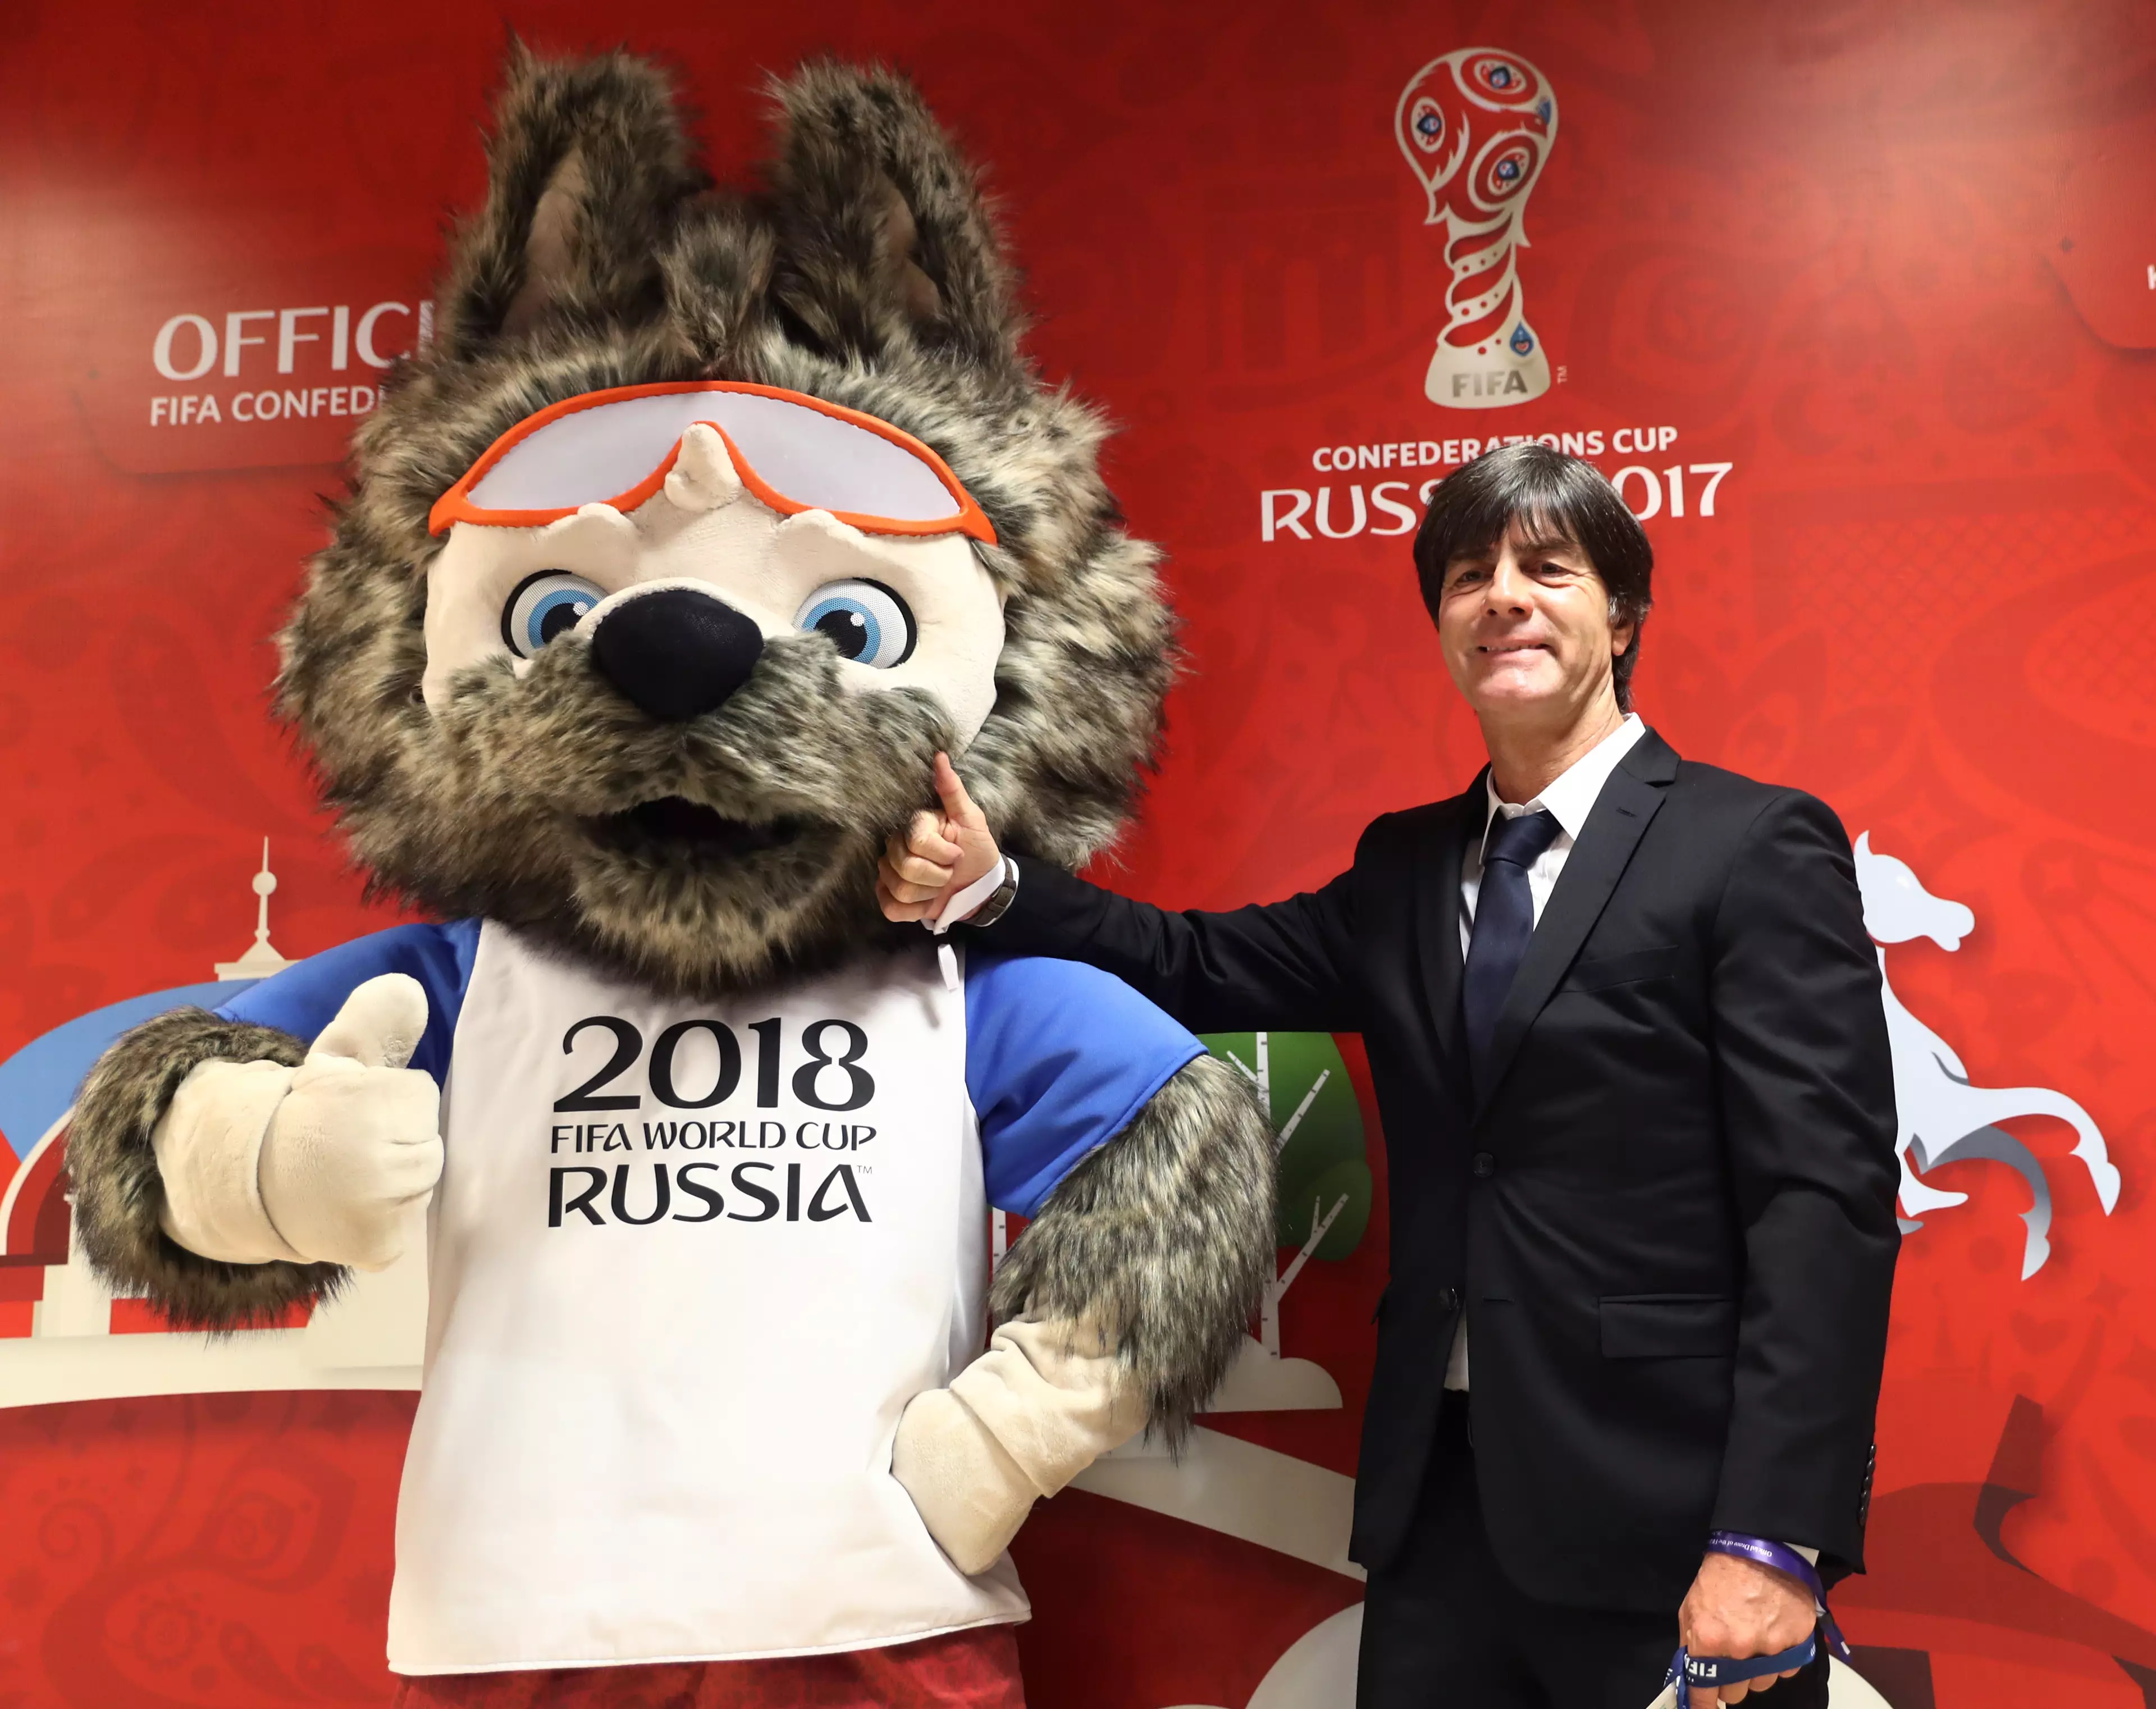 2018 World Cup wolf mascot 'Sabiwaka'. Image: PA